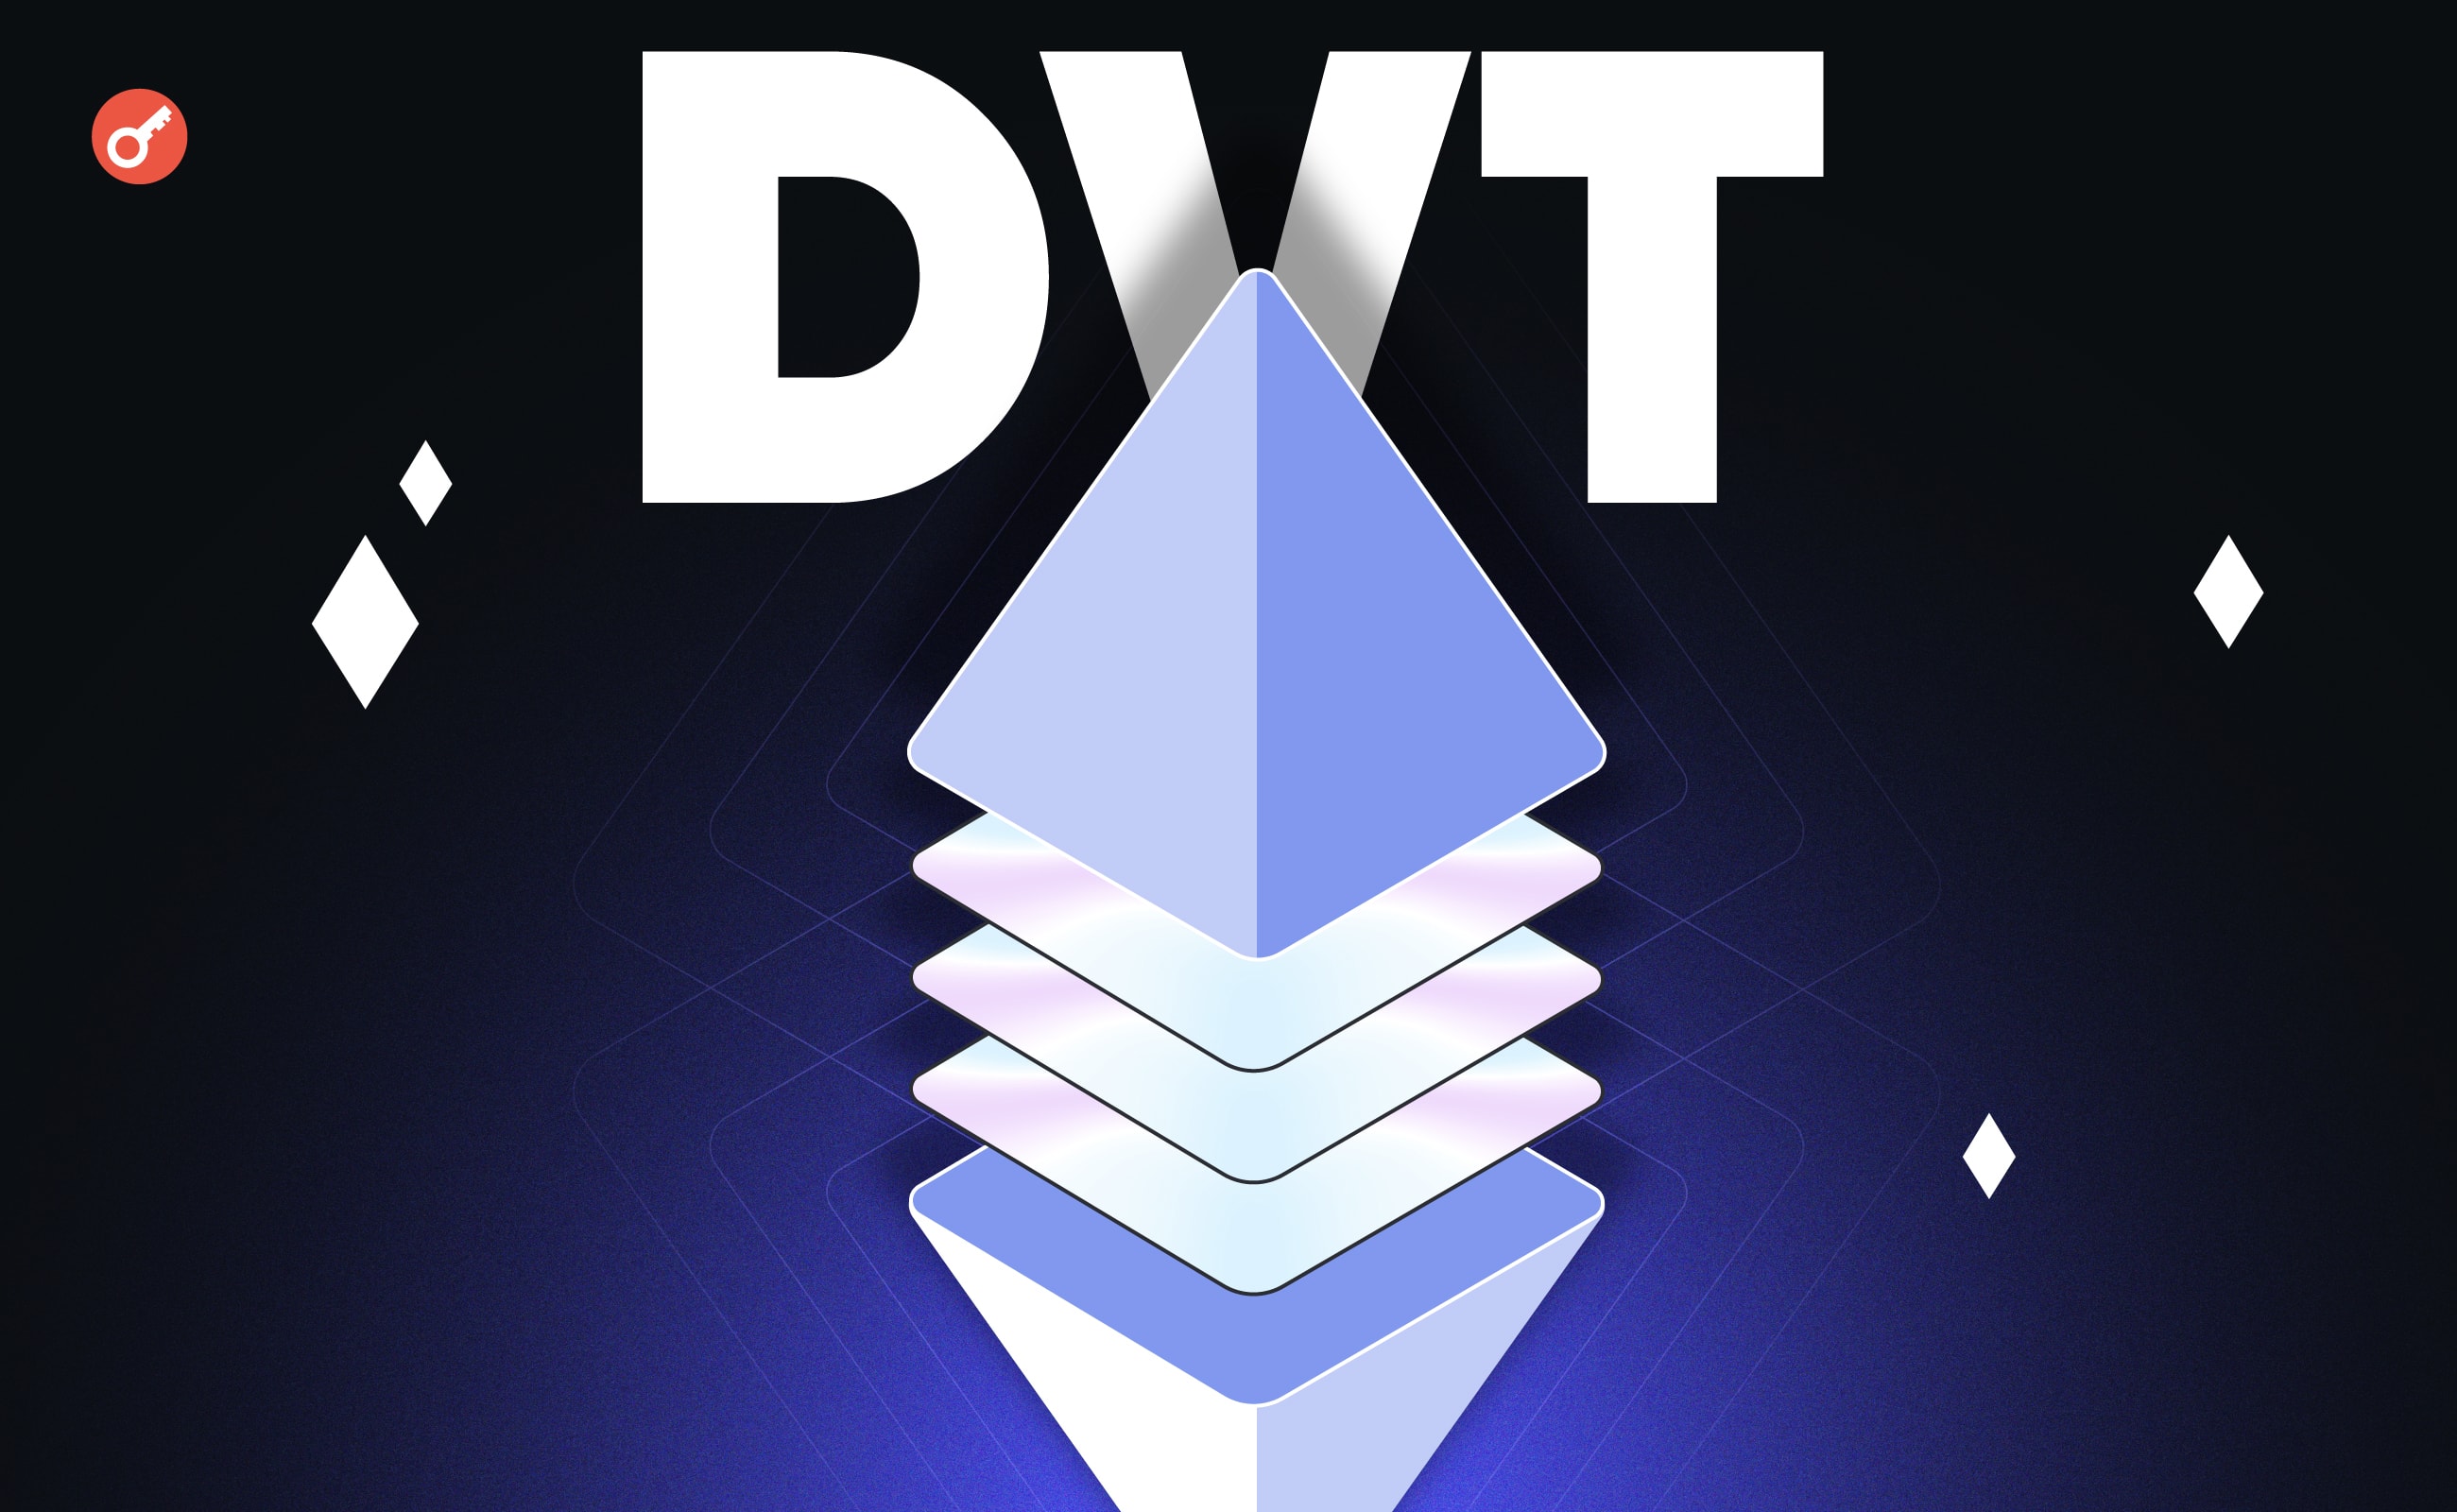 Многоуровневая децентрализация: что такое DVT и как технология может помочь Ethereum? Заглавный коллаж новости.